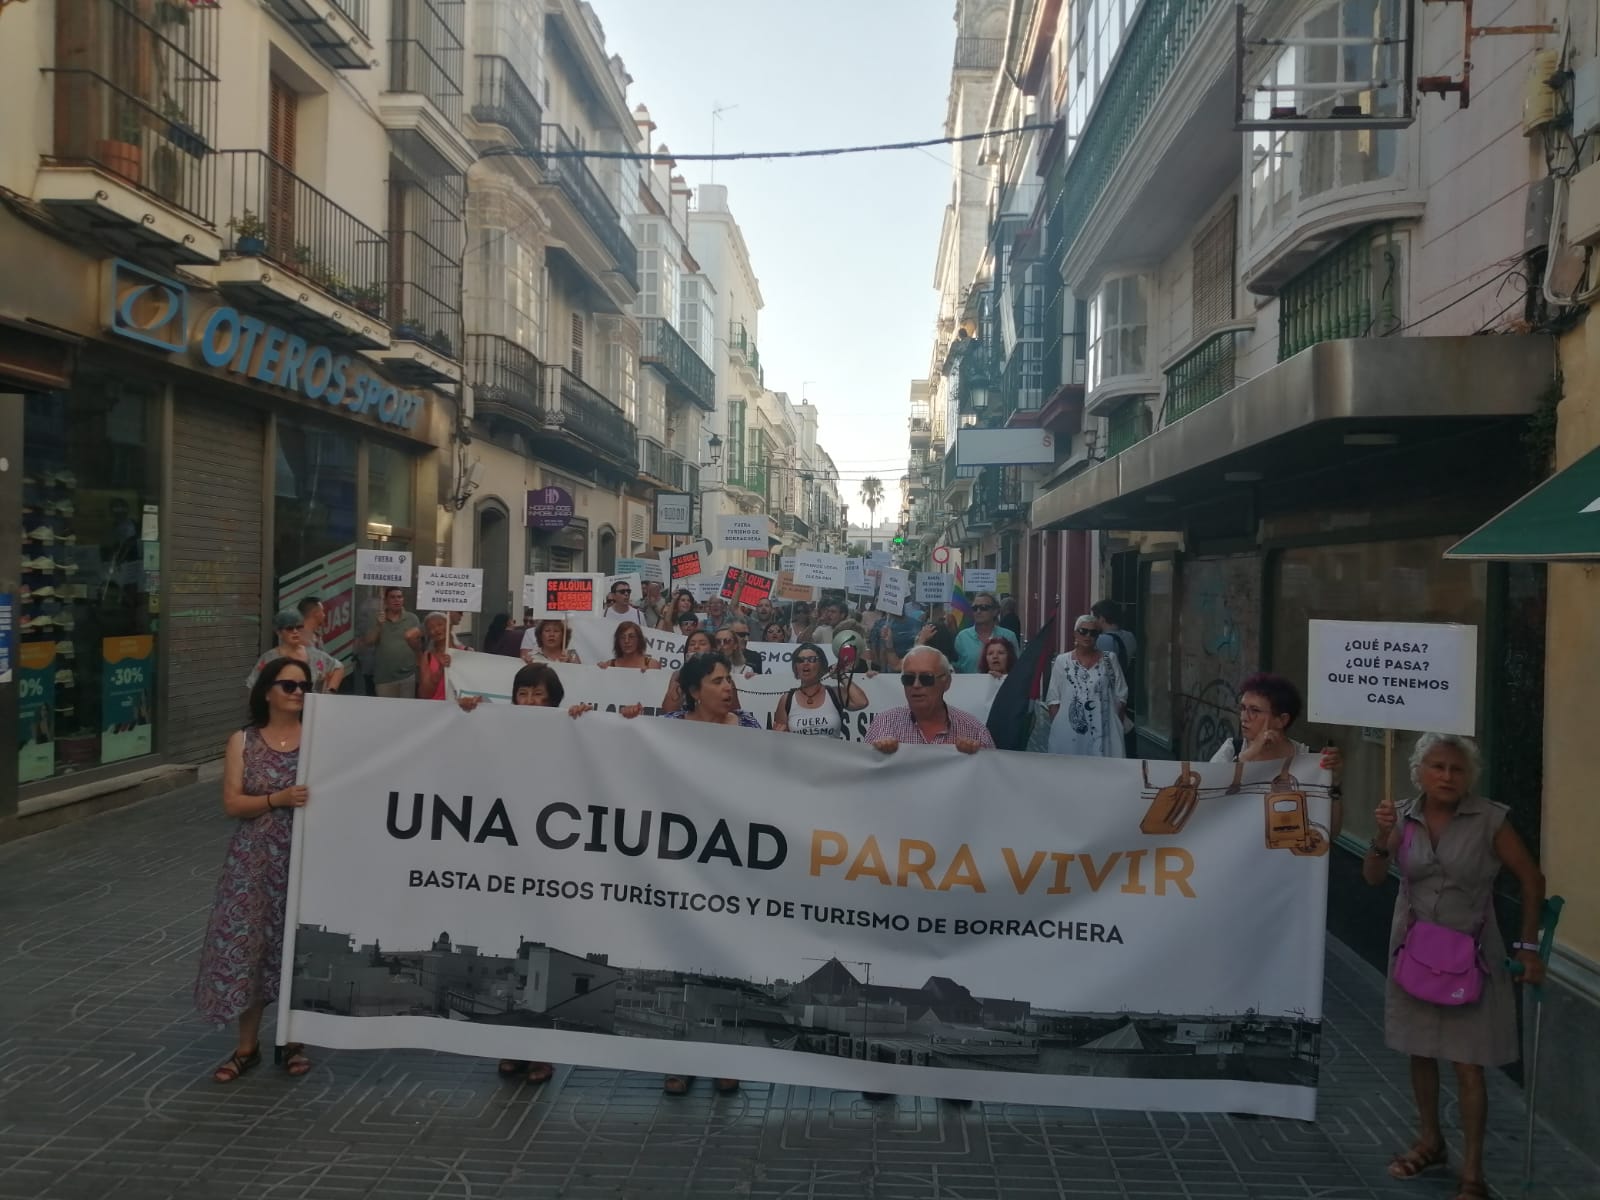 La manifestación contra la turistificación por las calles de El Puerto.